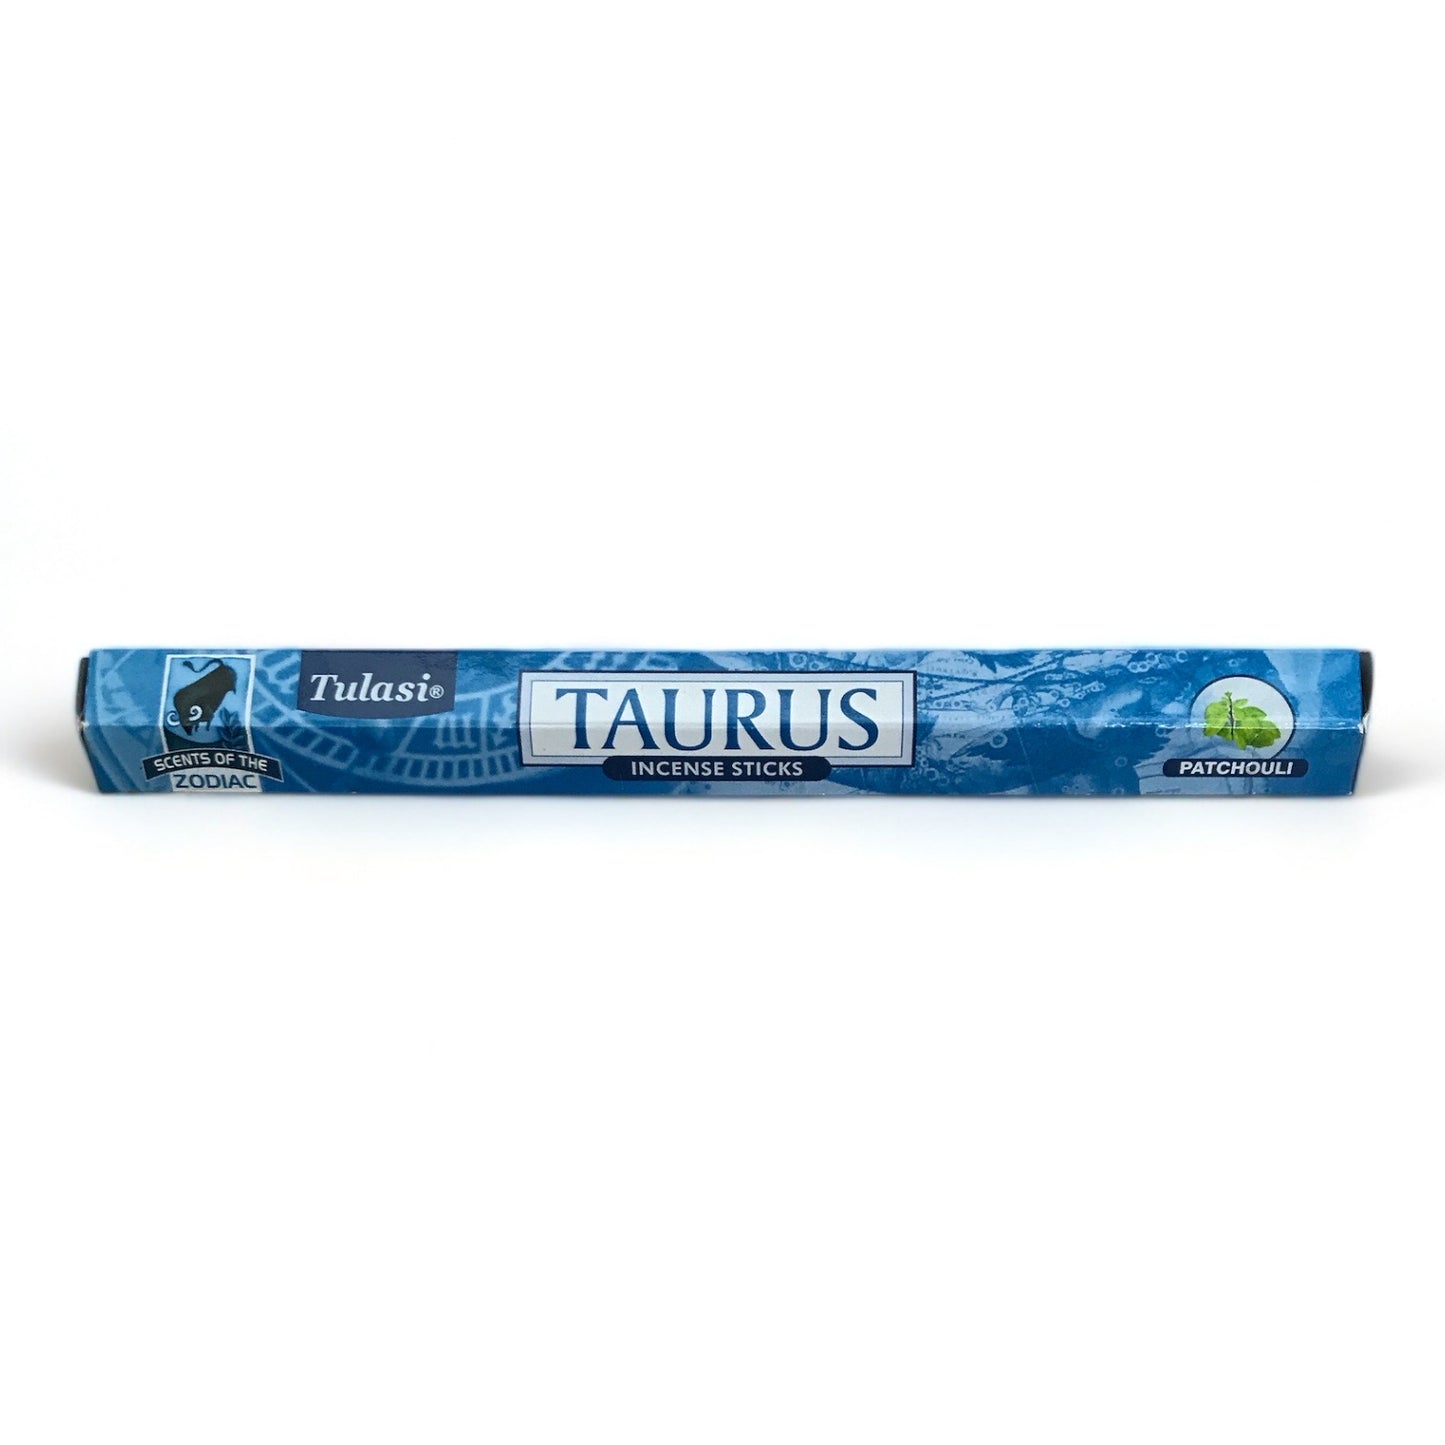 Taurus Incense Sticks - Tulasi